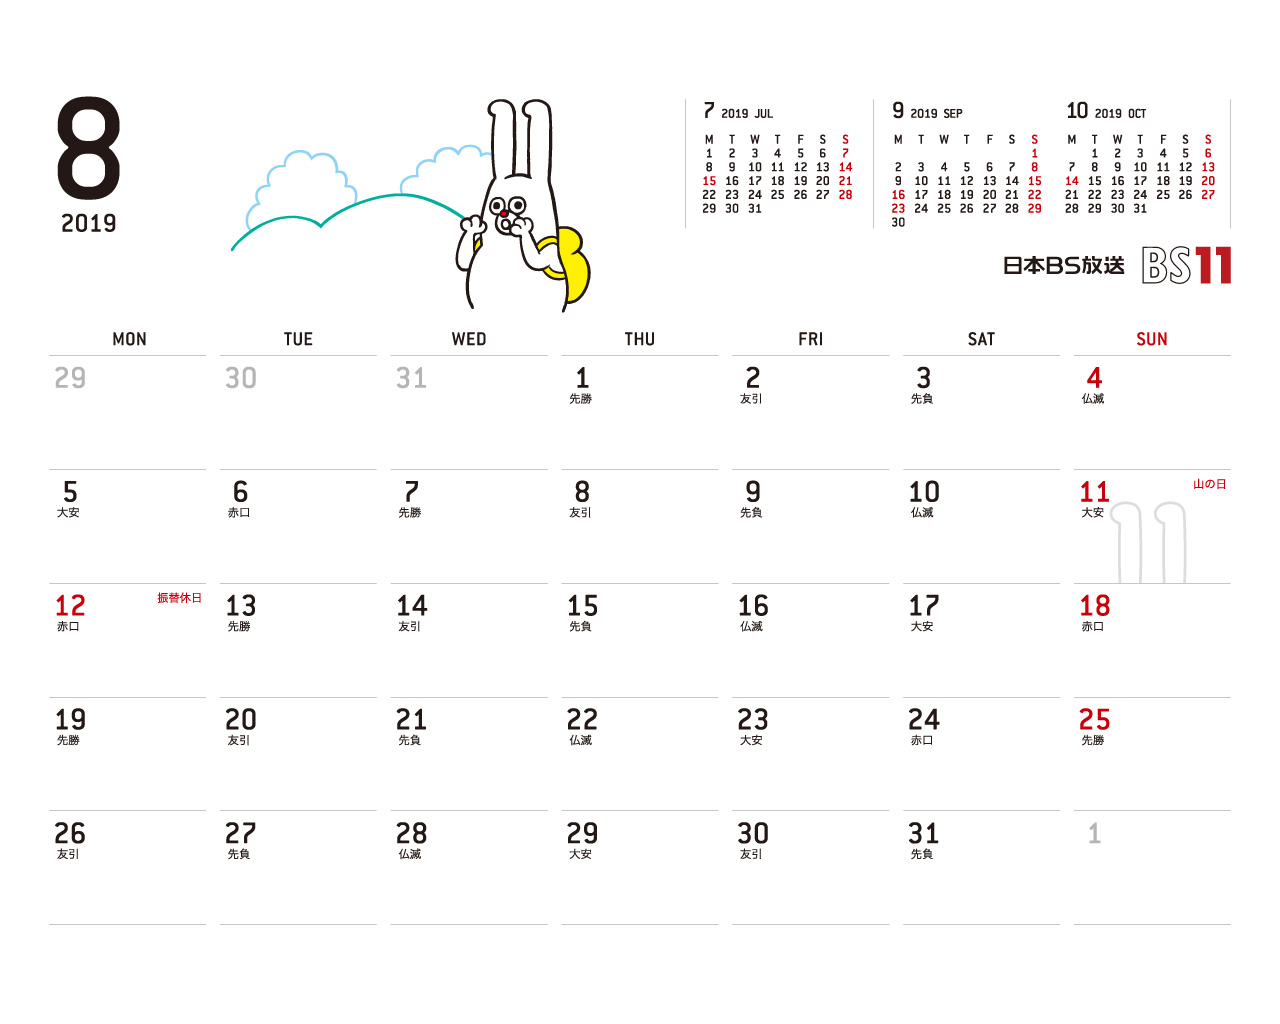 じゅういっちゃんのデジタルカレンダー2019年08月 Bs11 イレブン いつでも無料放送